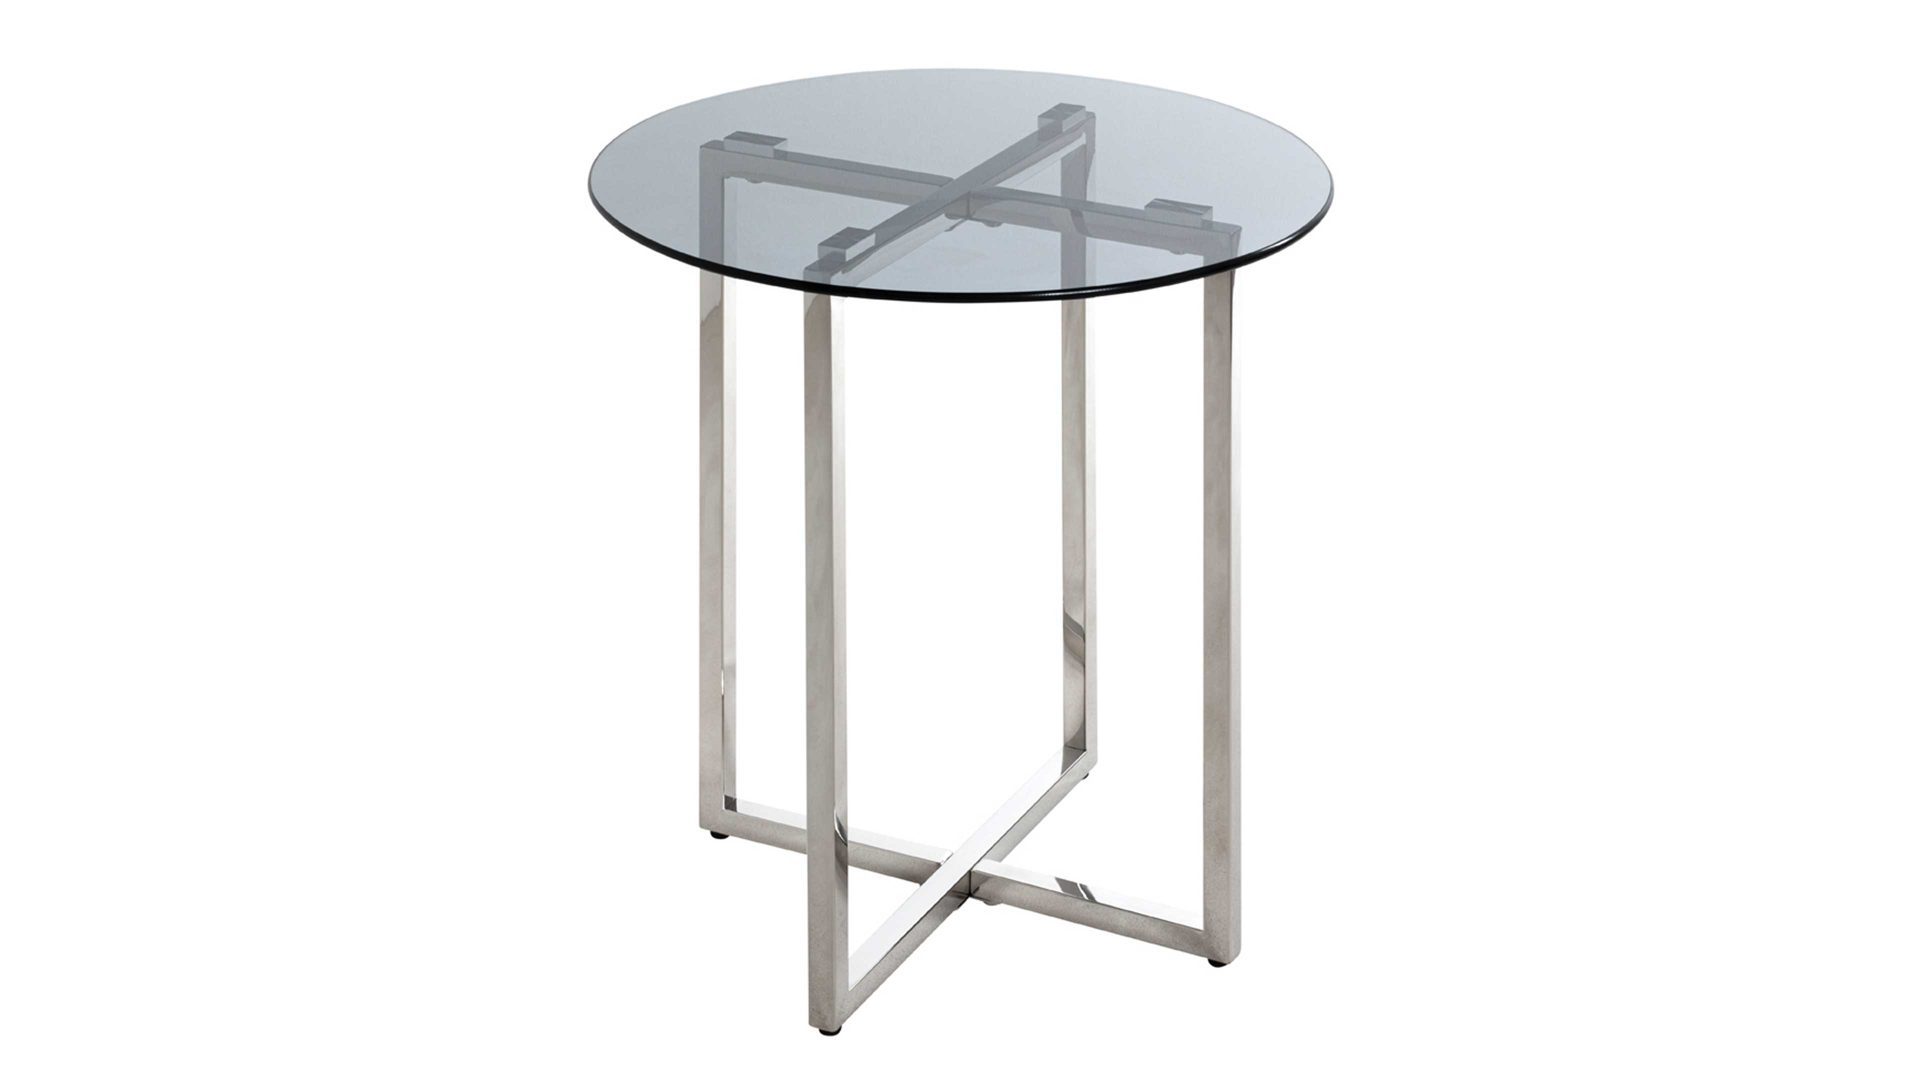 Beistelltisch Haku aus Glas in Grau Beistelltisch graues Glas & Edelstahl - Durchmesser ca. 50 cm